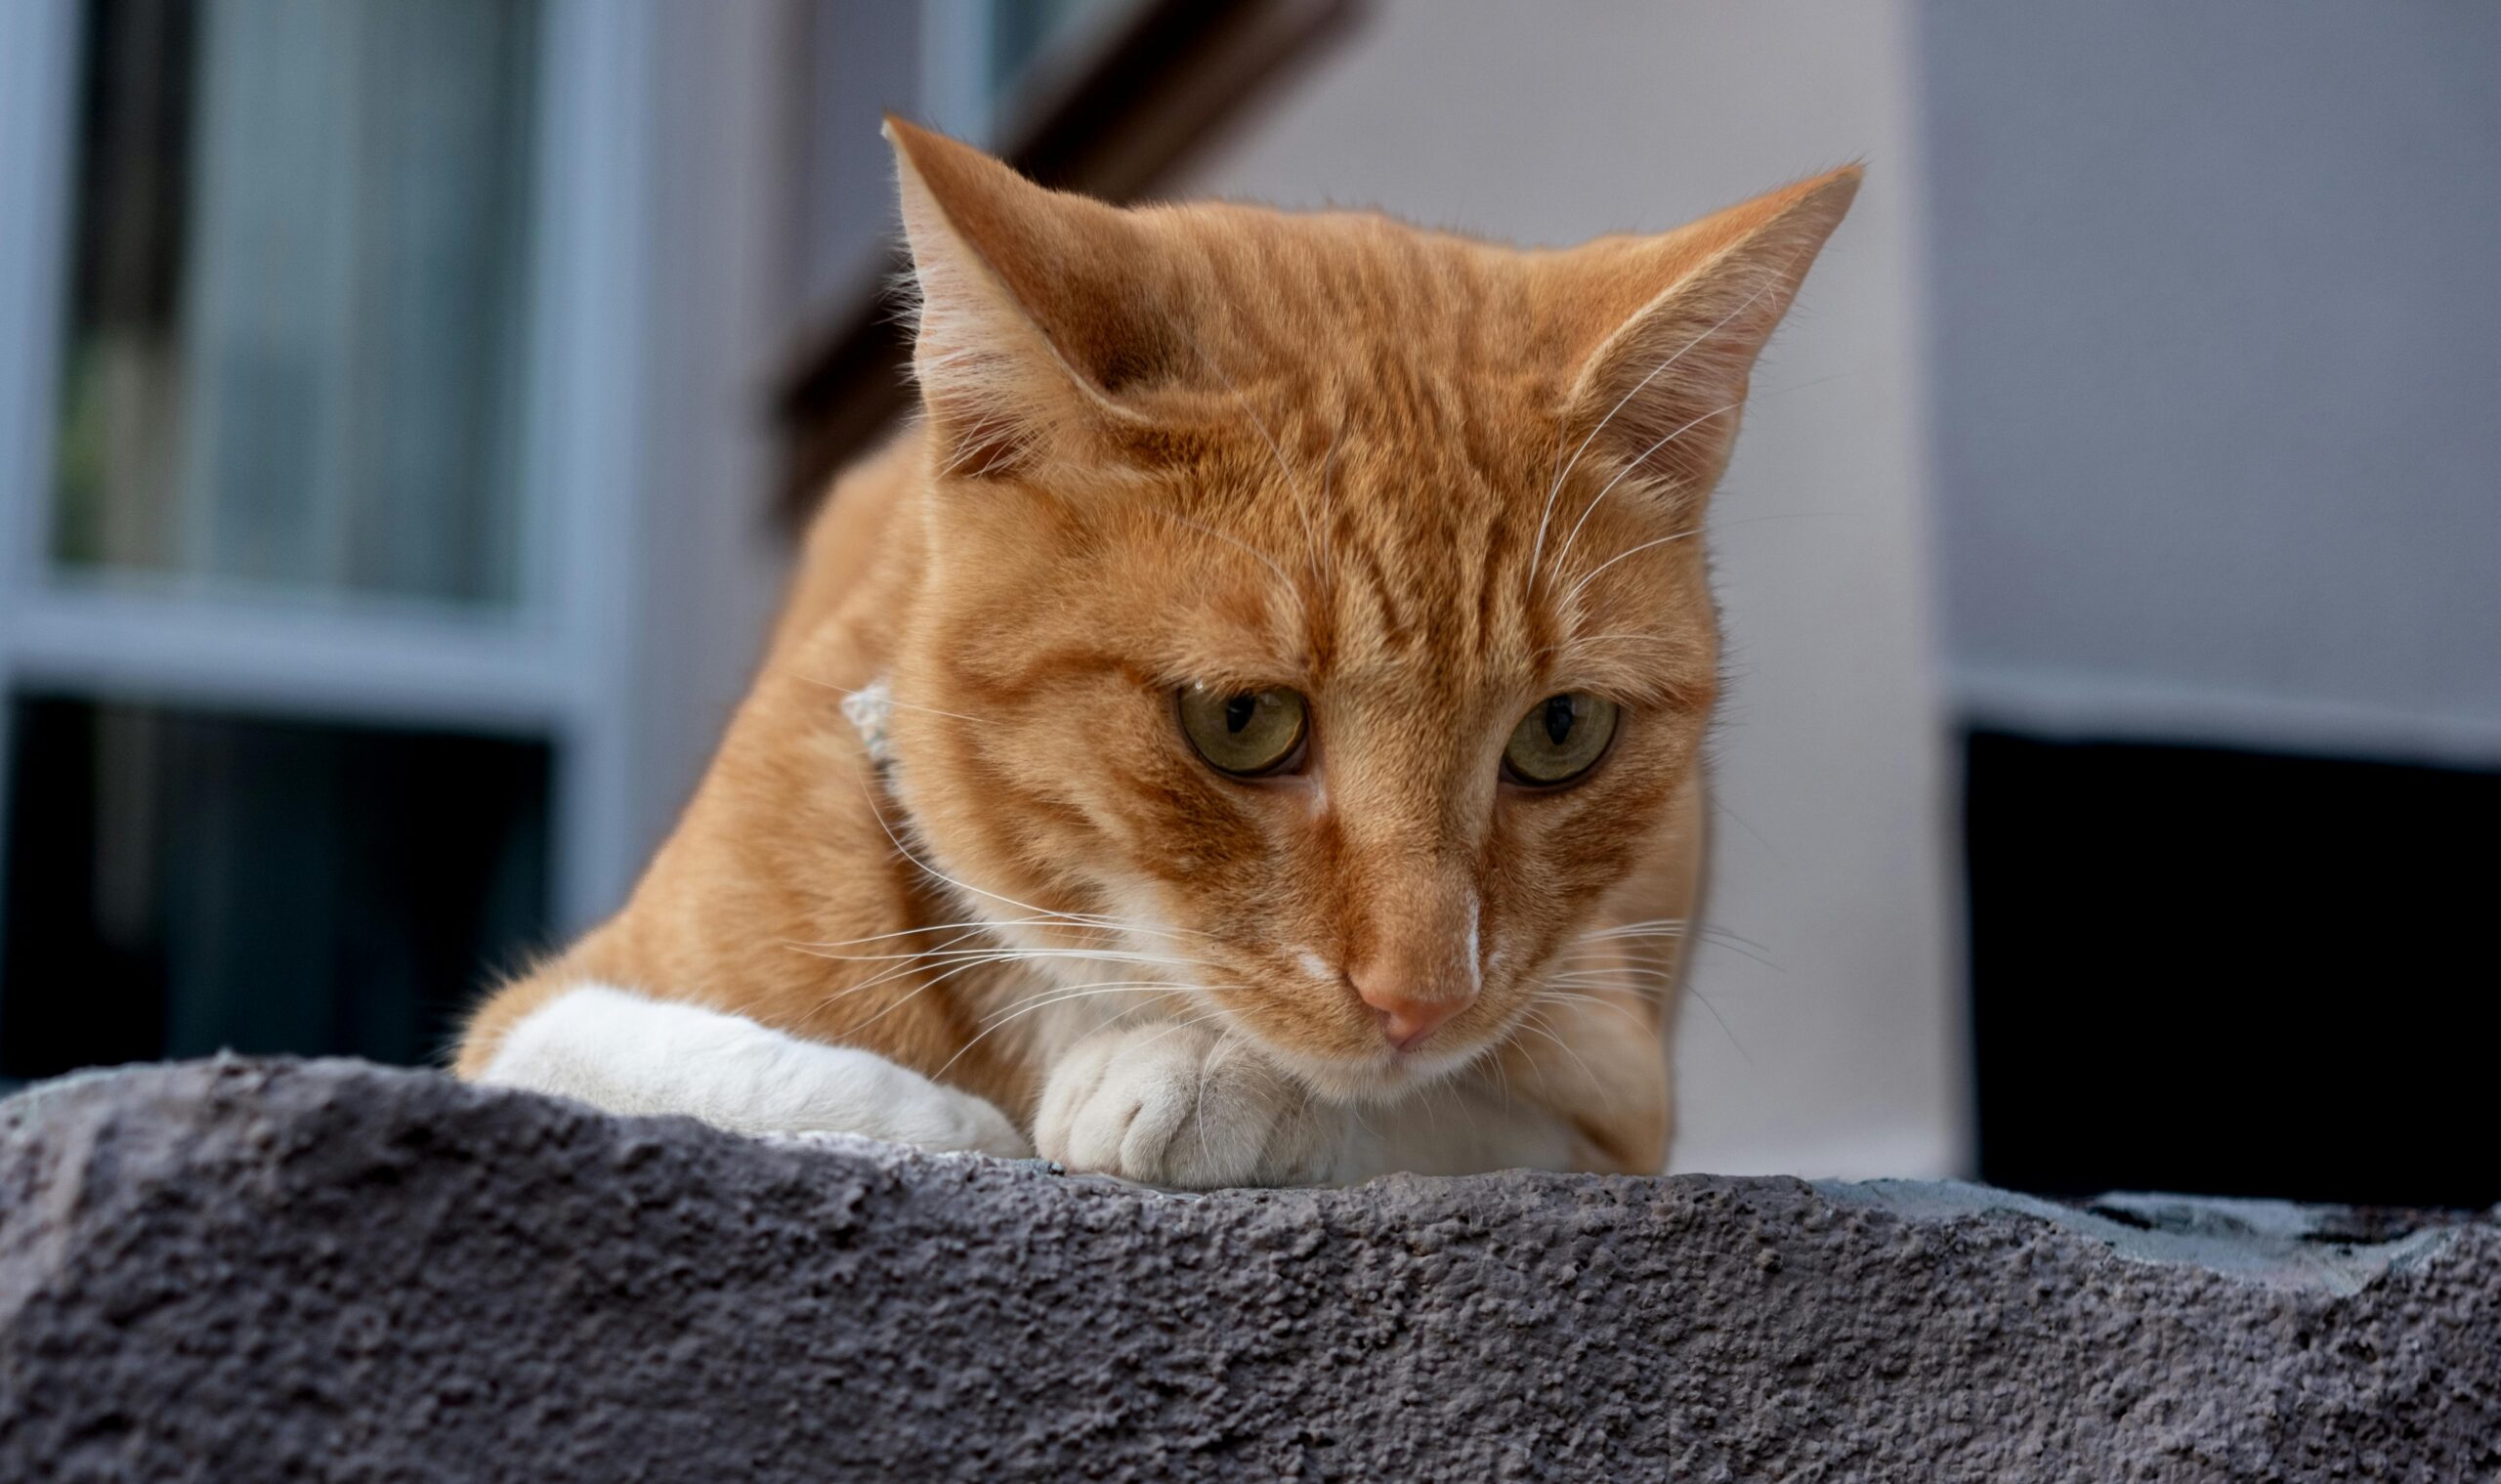 Zeckenkopf ist in Katze steckengeblieben - Zecke steckt in Katze - Lösung und akute Hilfe